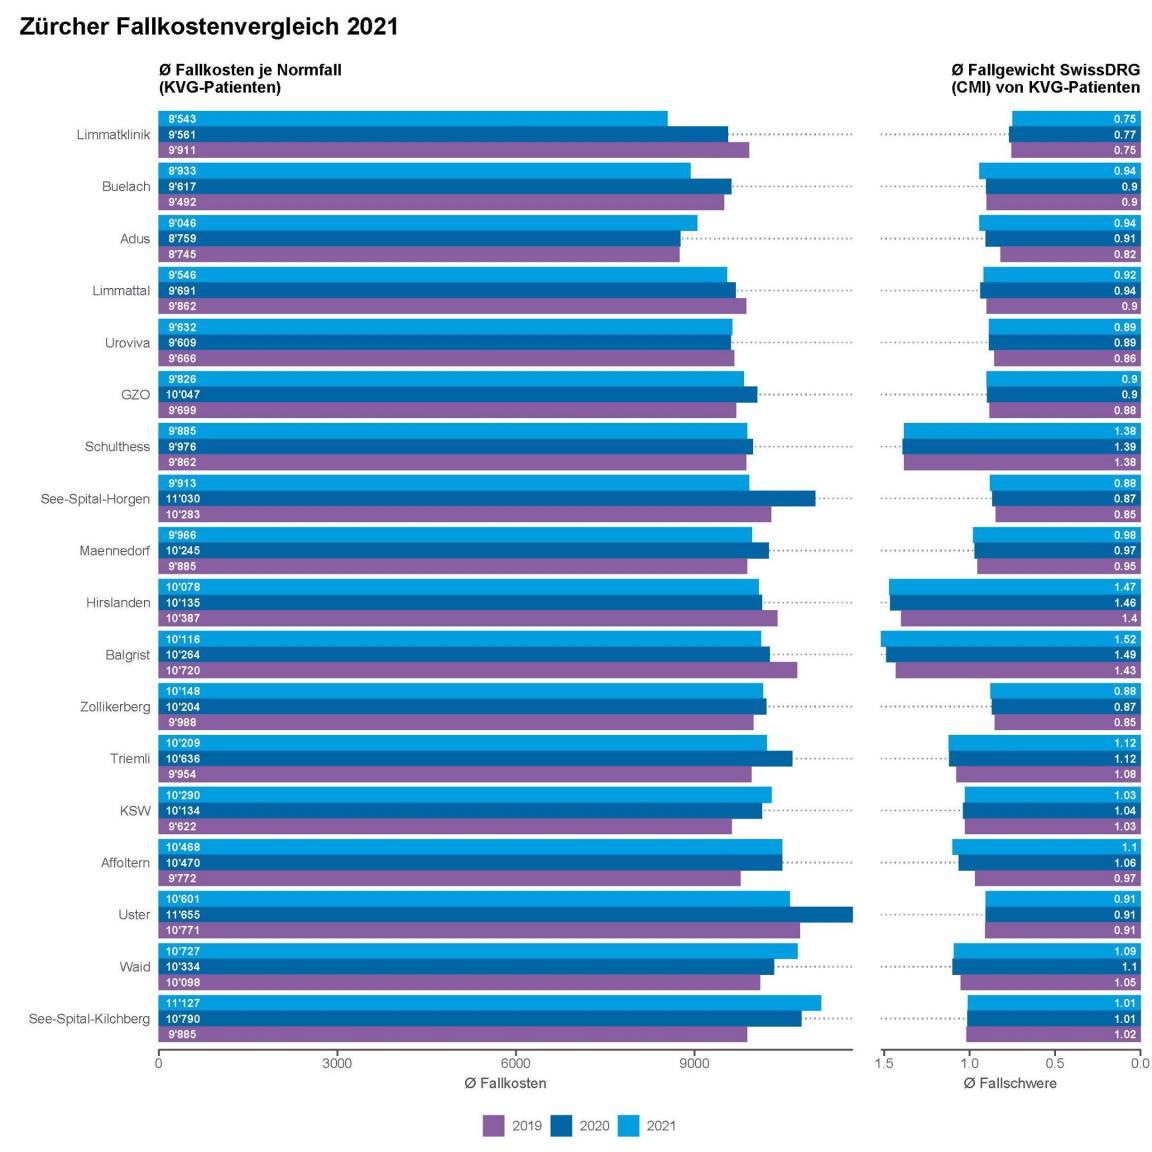 Grafik bezüglich Kosten pro stationärem Normfall 2021 und Fallgewicht auf Basis von SwissDRG von 18 vergleichbaren Akutspitälern im Kanton Zürich